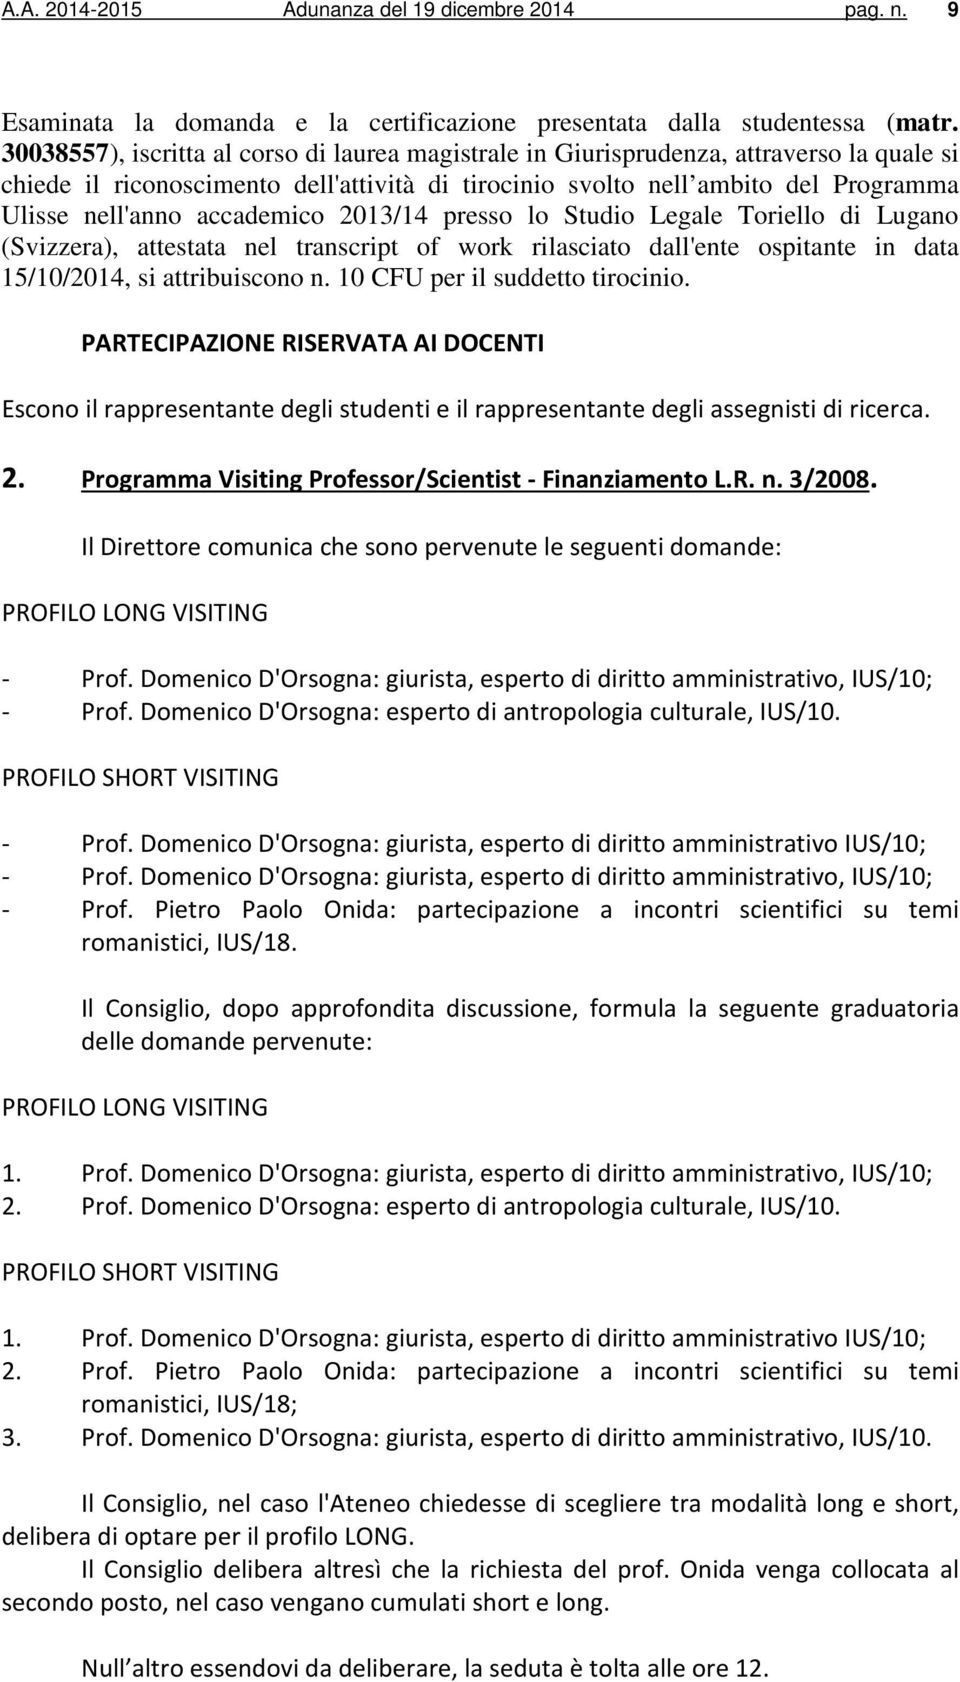 accademico 2013/14 presso lo Studio Legale Toriello di Lugano (Svizzera), attestata nel transcript of work rilasciato dall'ente ospitante in data 15/10/2014, si attribuiscono n.